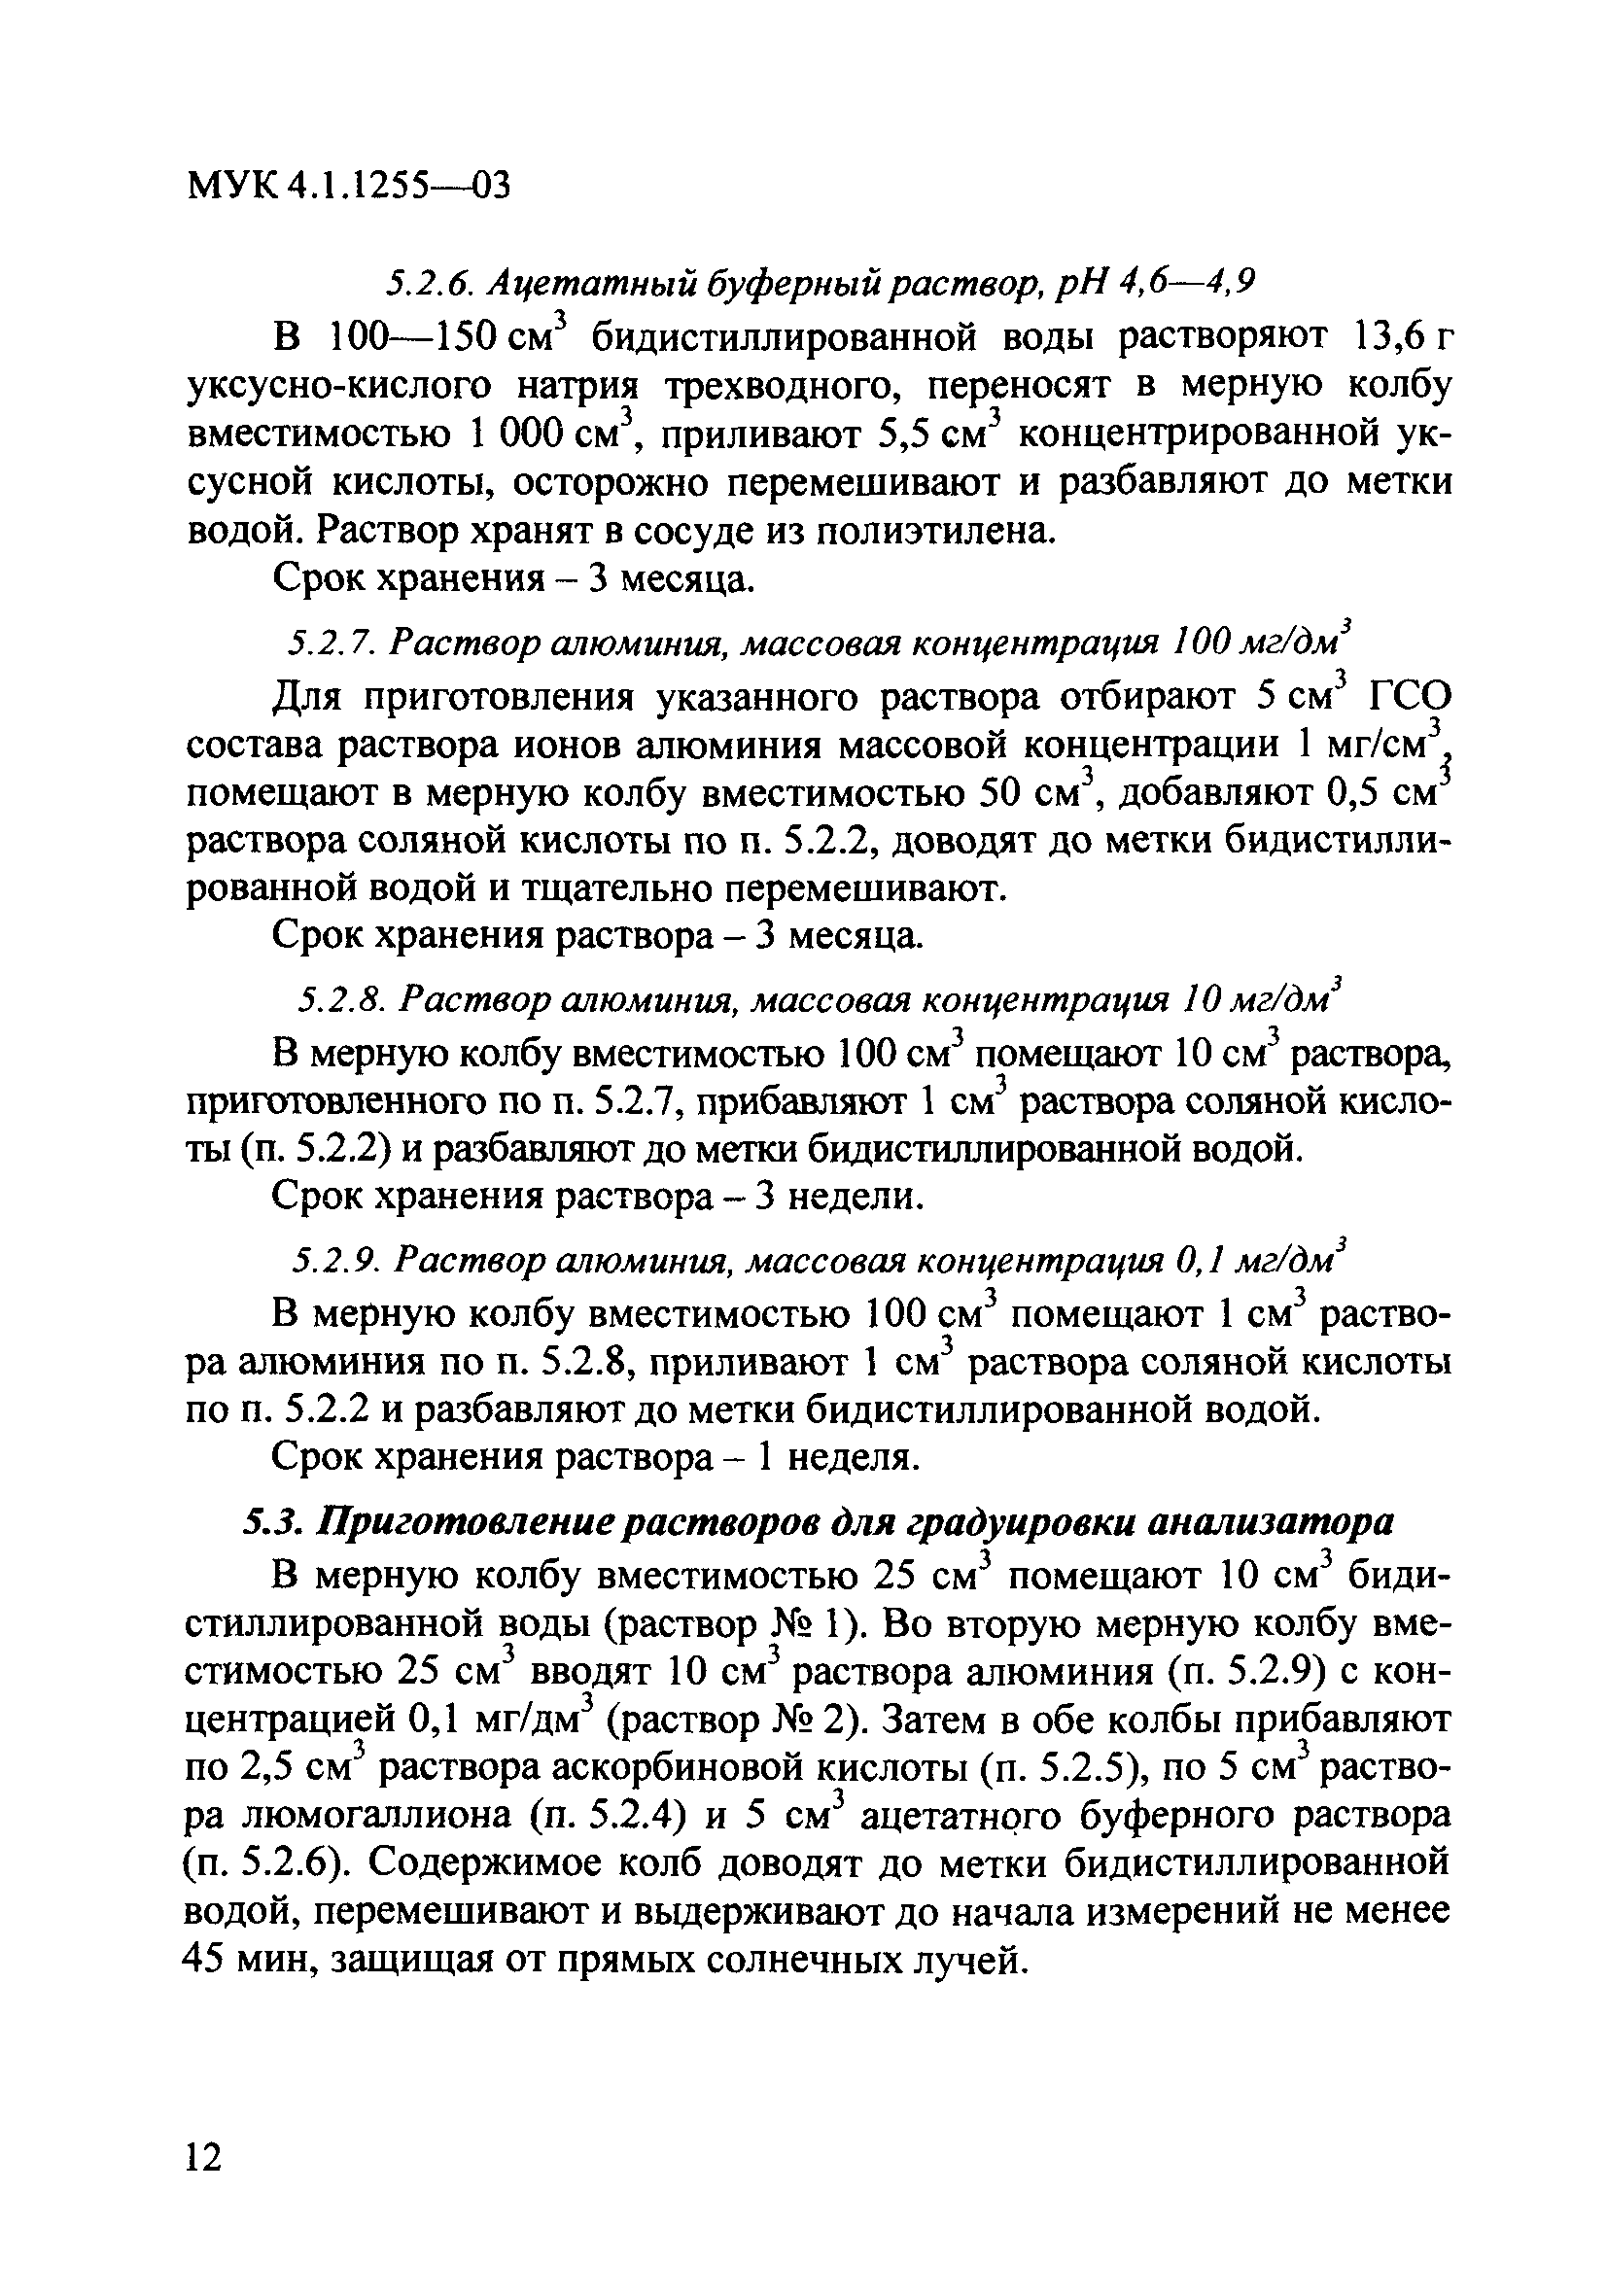 МУК 4.1.1255-03